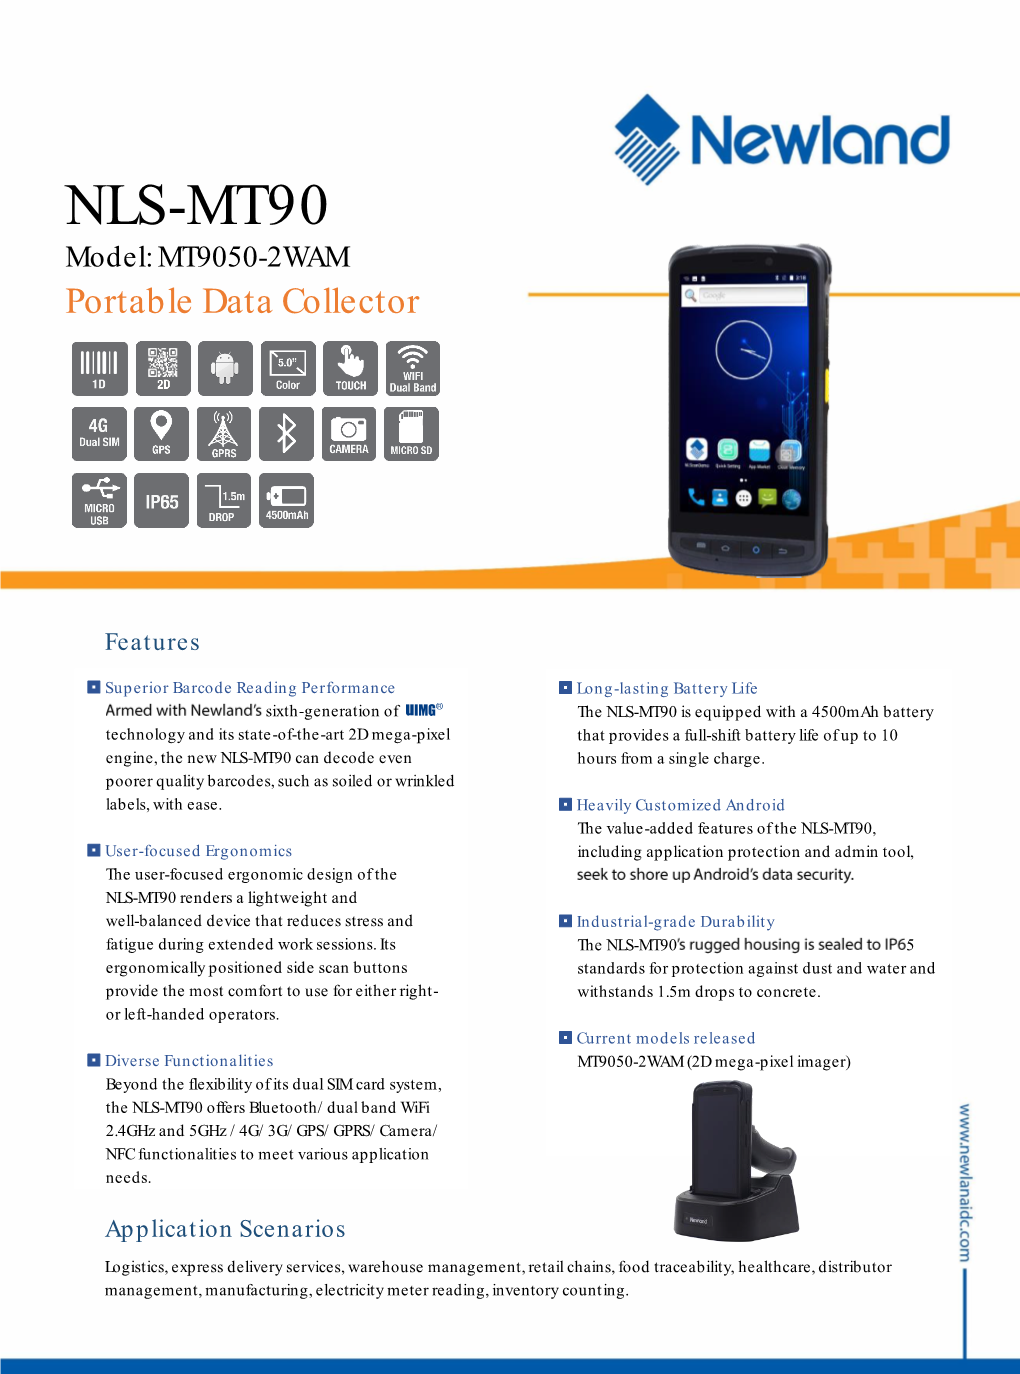 NLS-MT90 Model: MT9050-2WAM Portable Data Collector